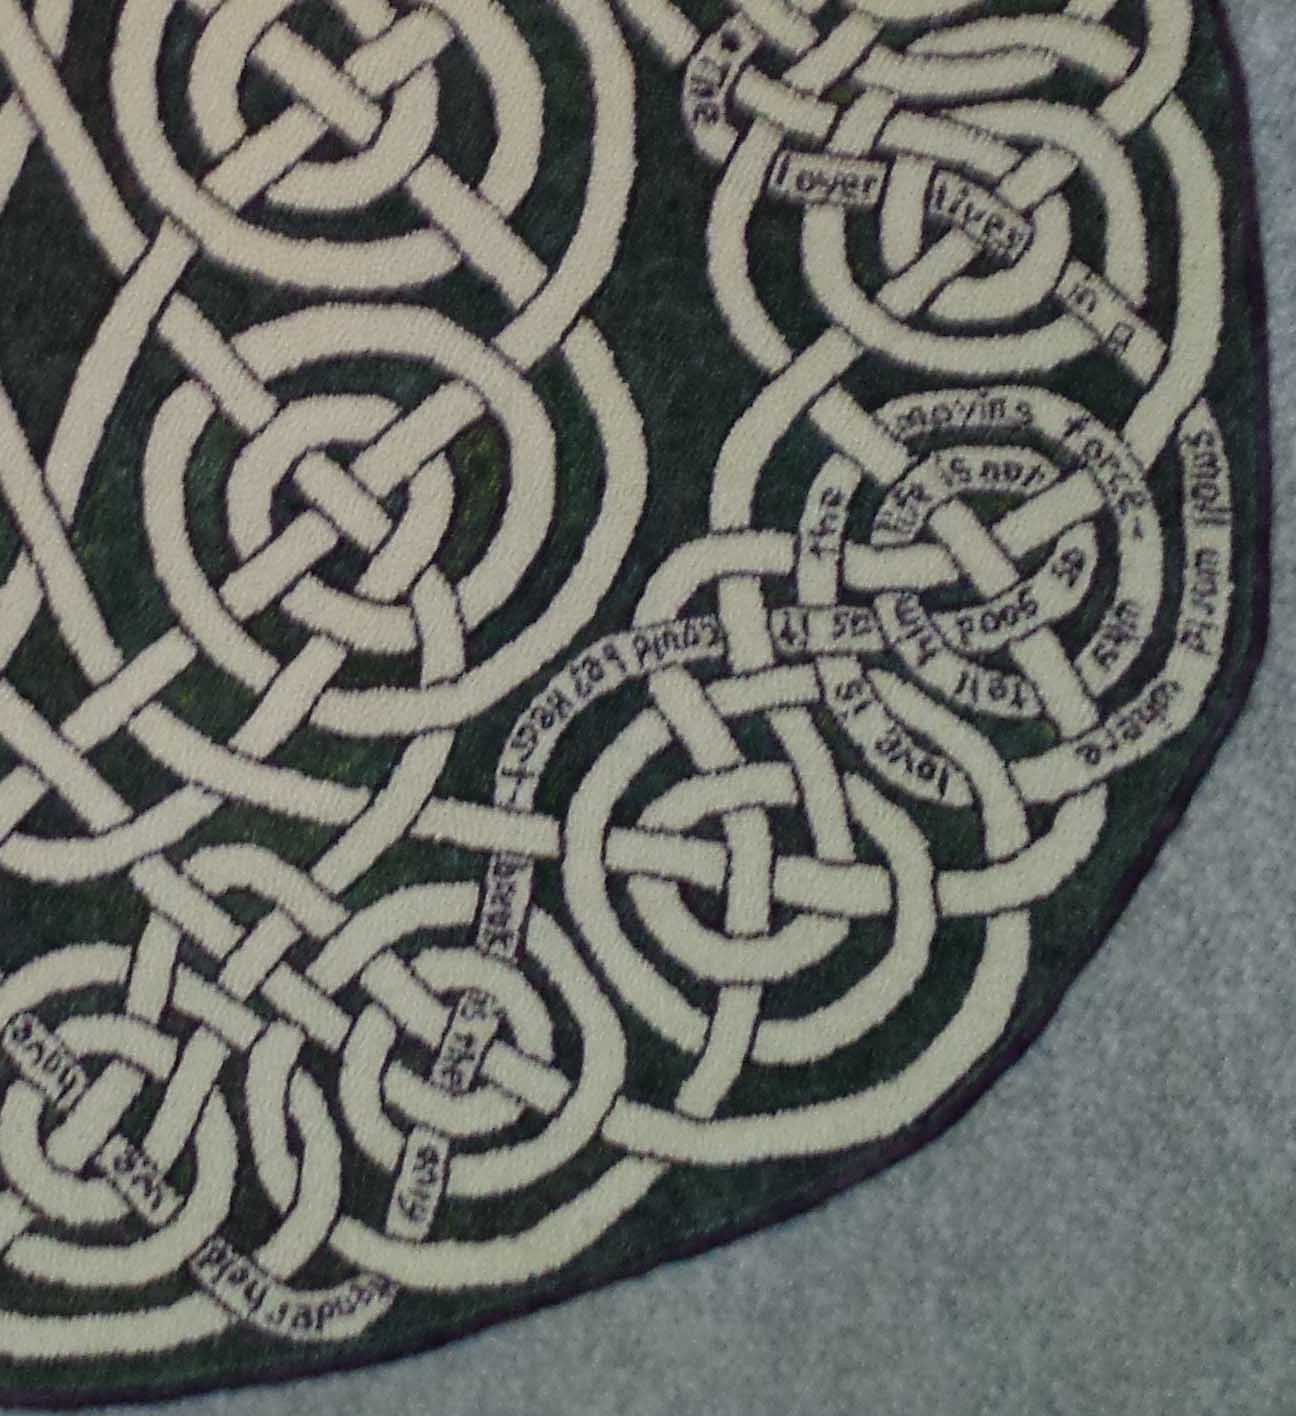 Celtic Love Knot Rug, 46" diameter